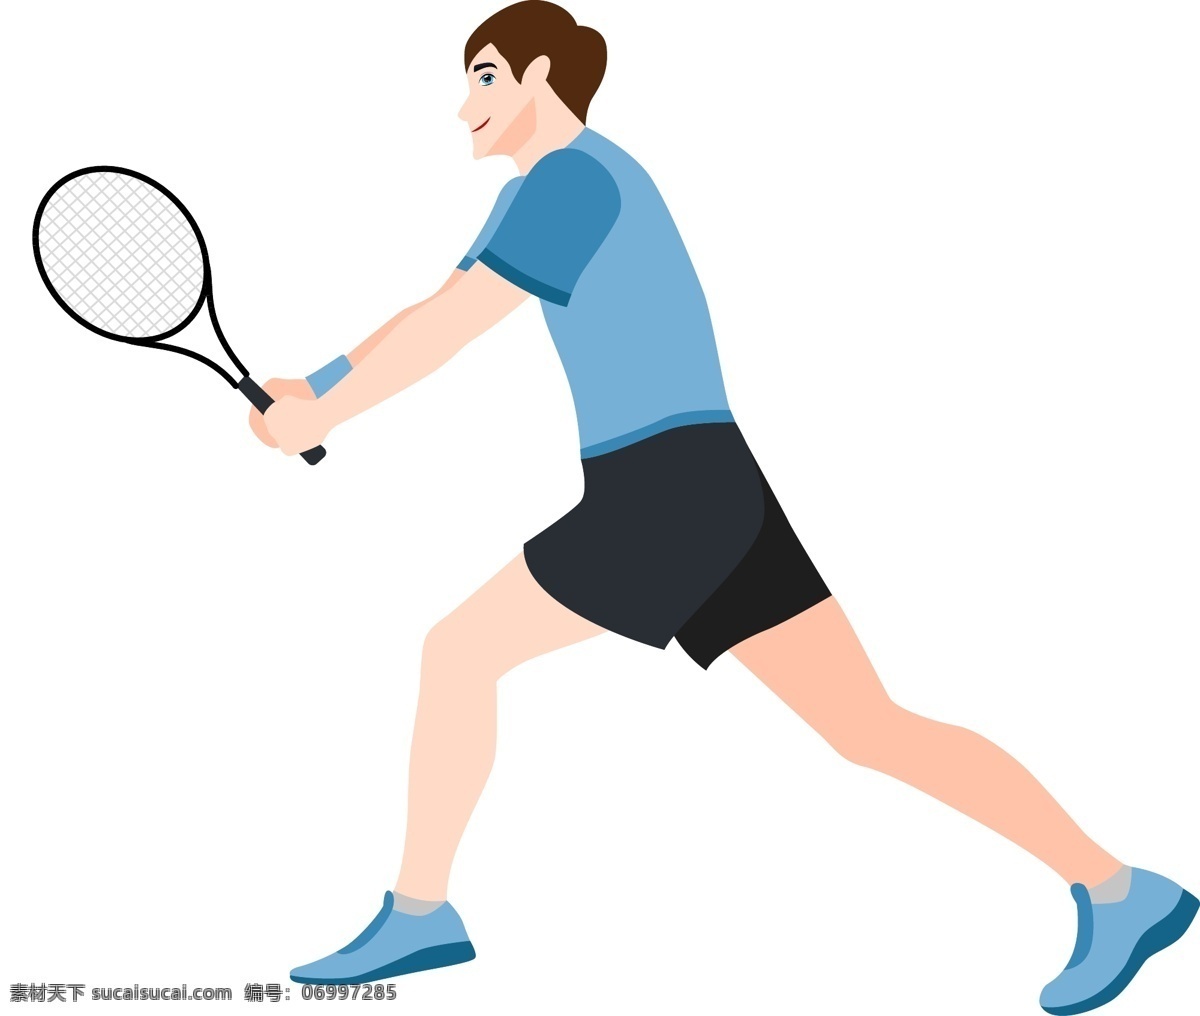 矢量 卡通 男孩 人物 校园 羽毛球 比赛 羽毛球运动员 超级联赛 运动 背景 剪影 运动卡通 羽毛球比赛 卡通运动